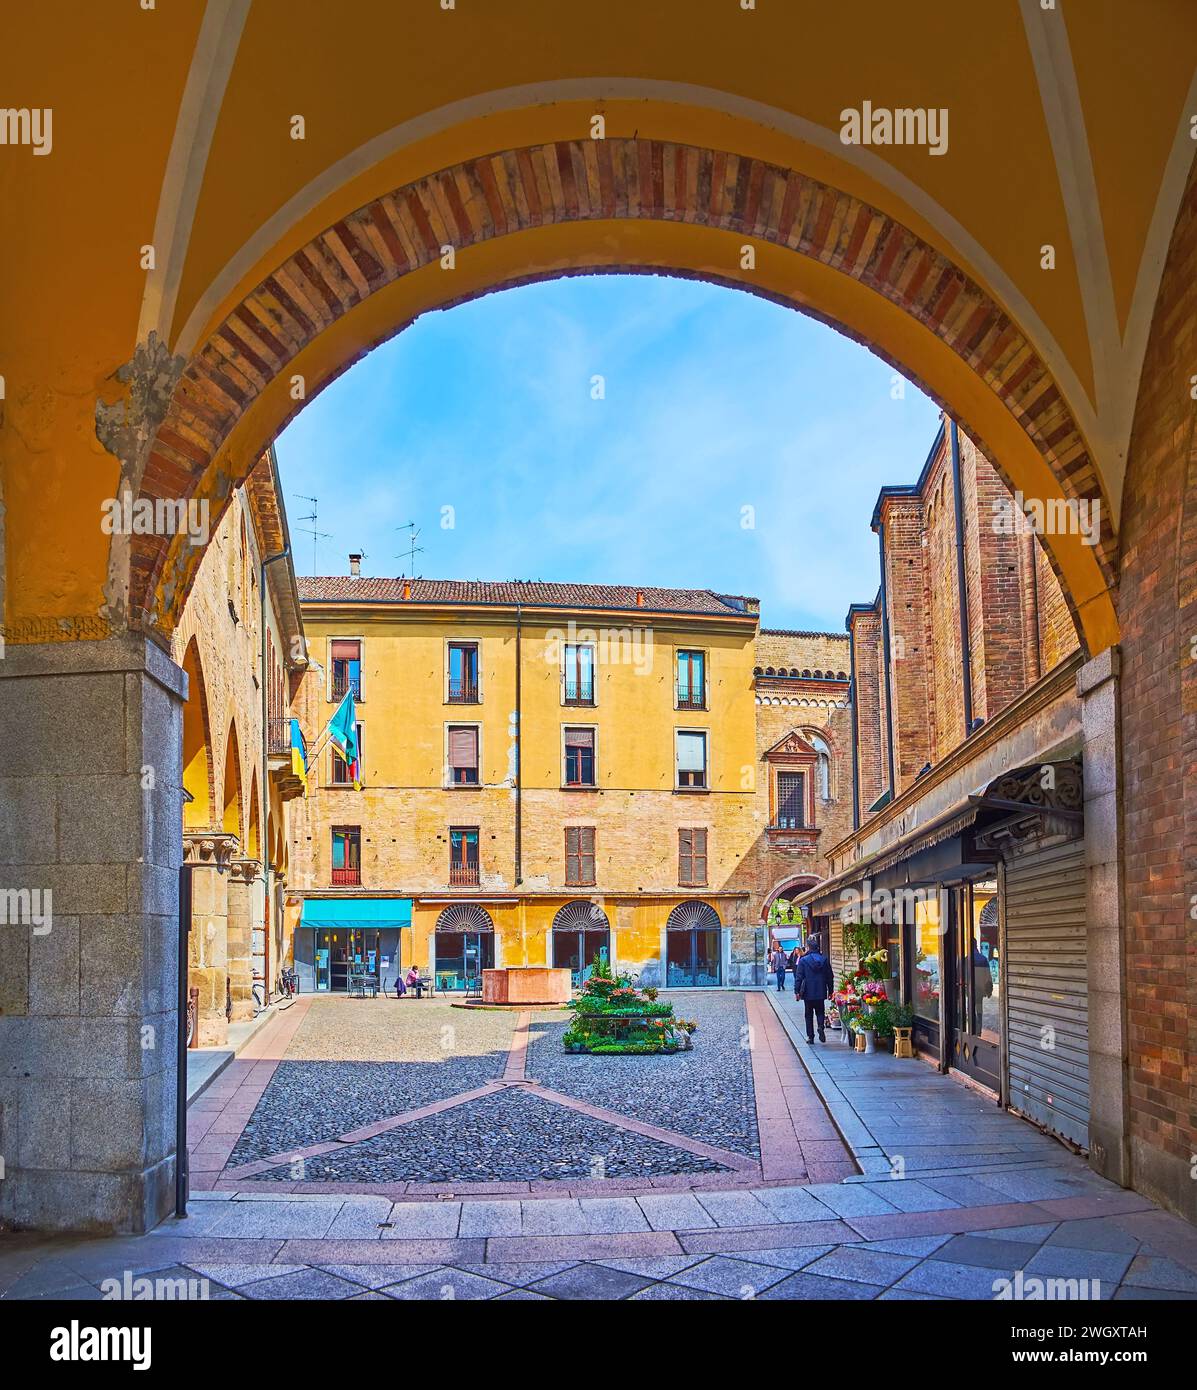 Historique Piazza Broletto dans la vieille ville de Lodi, Italie Banque D'Images